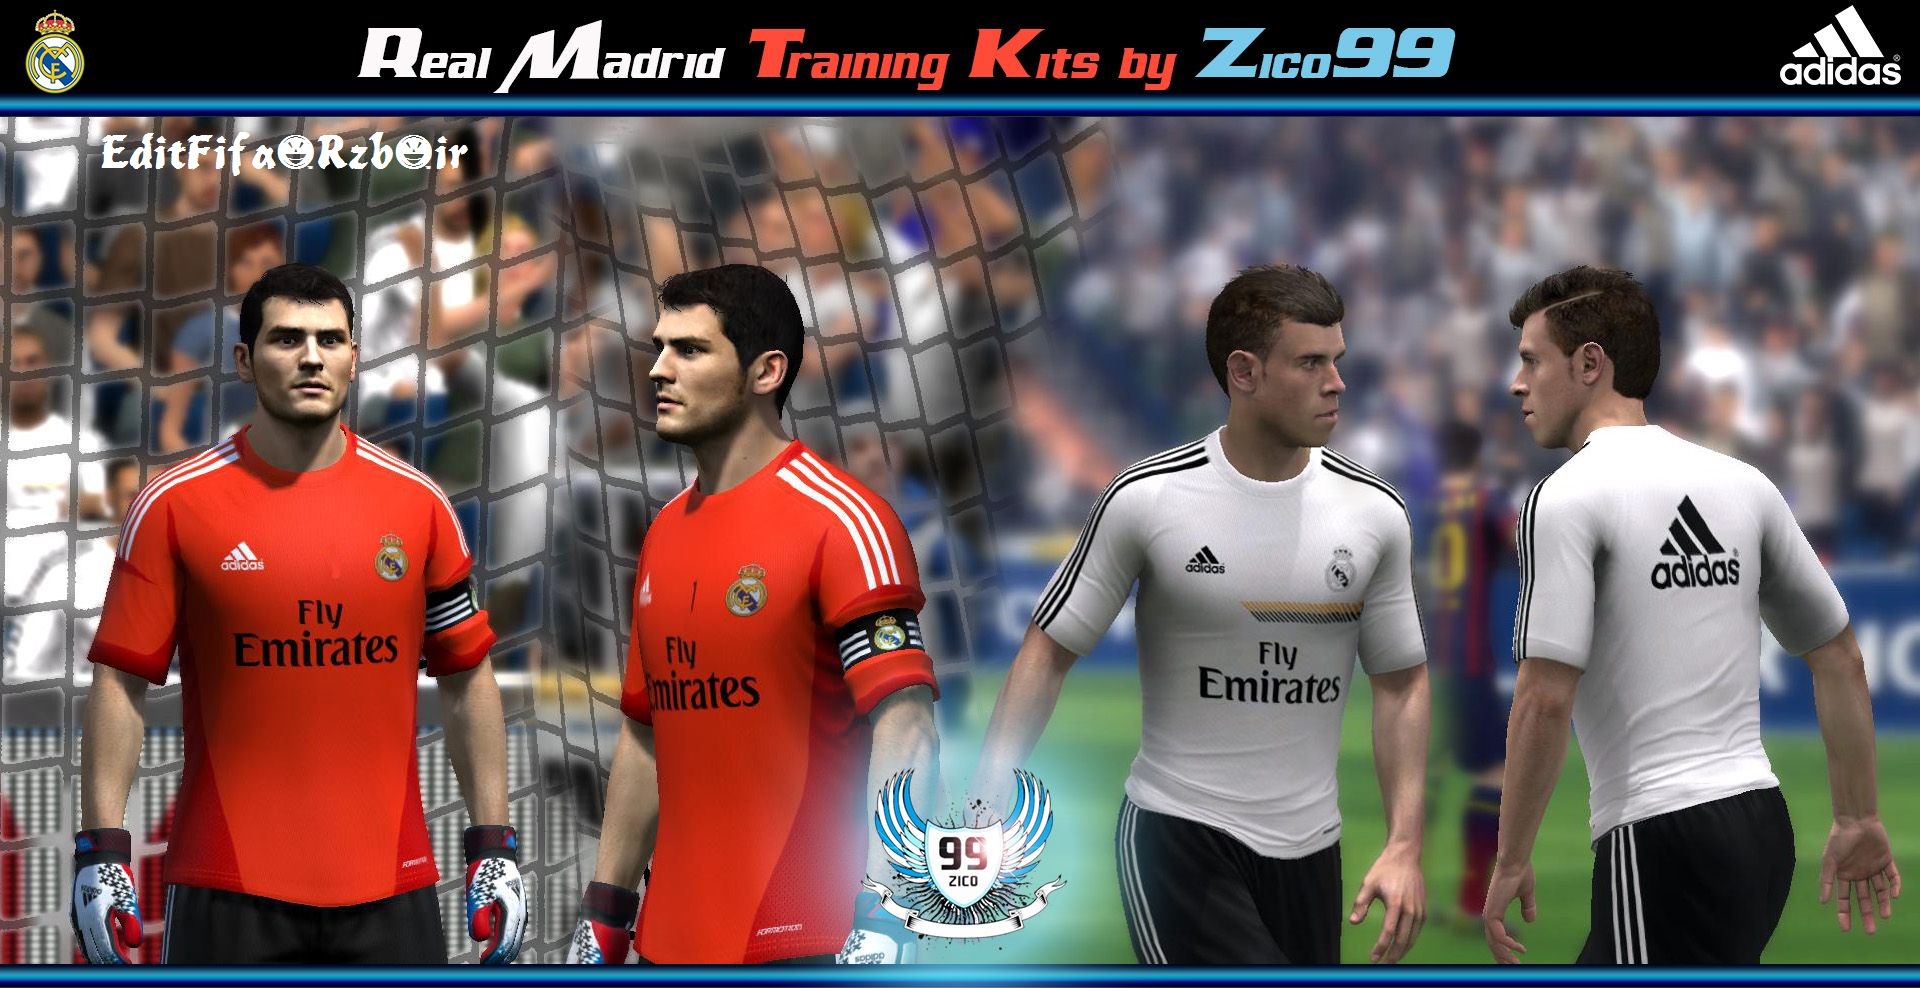 Real Madrid 2013-14 Training Kit Set 